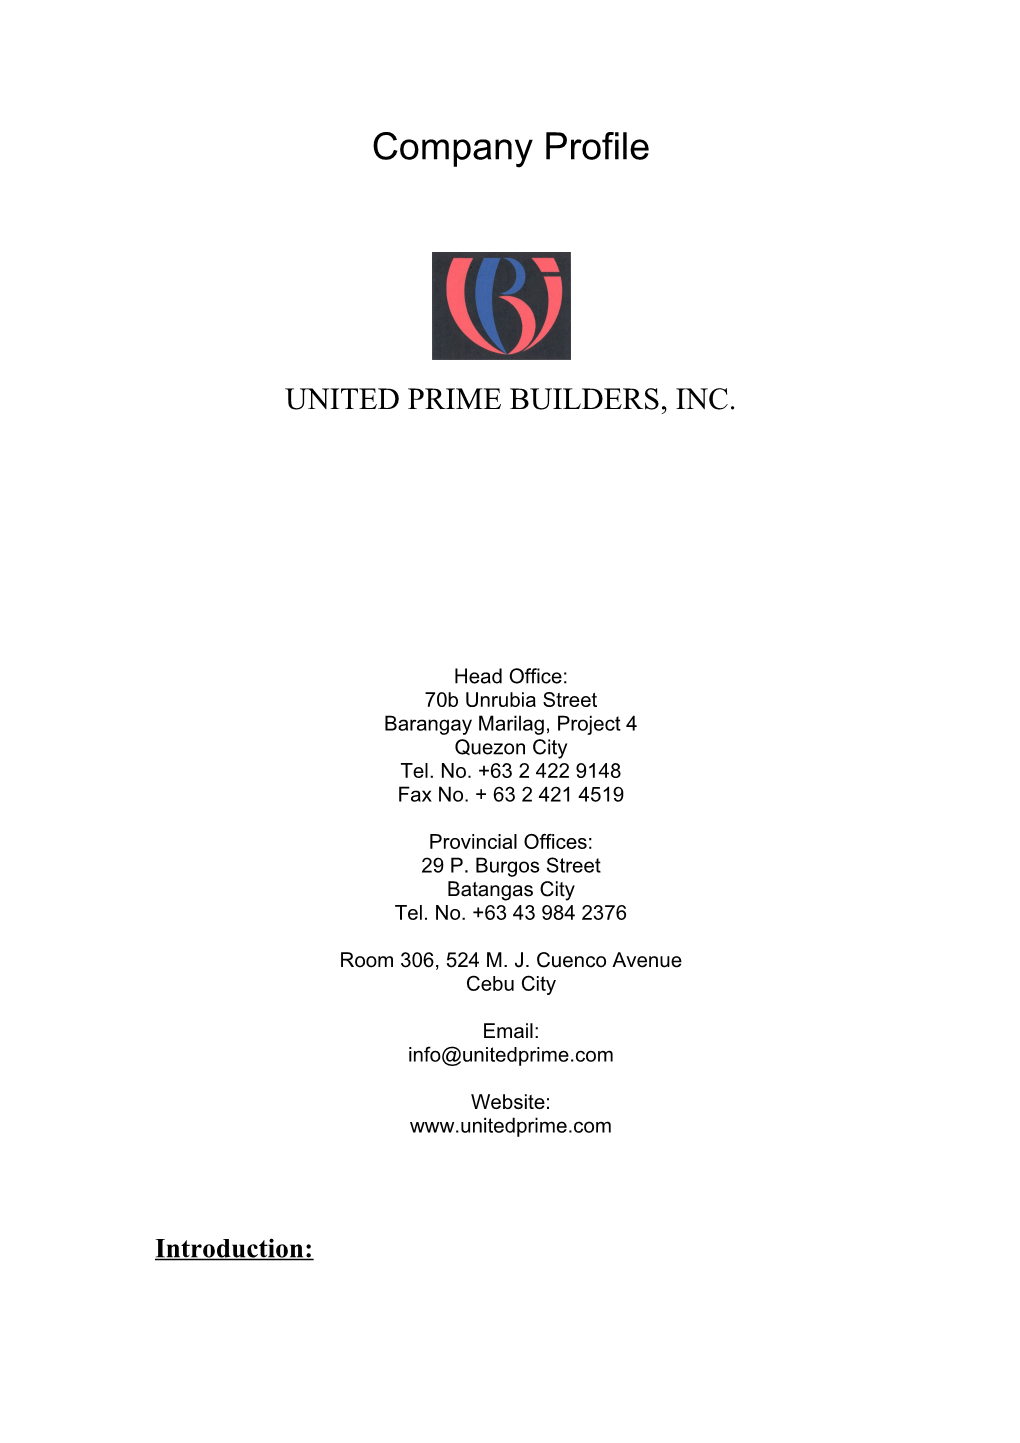 United Prime Builders, Inc